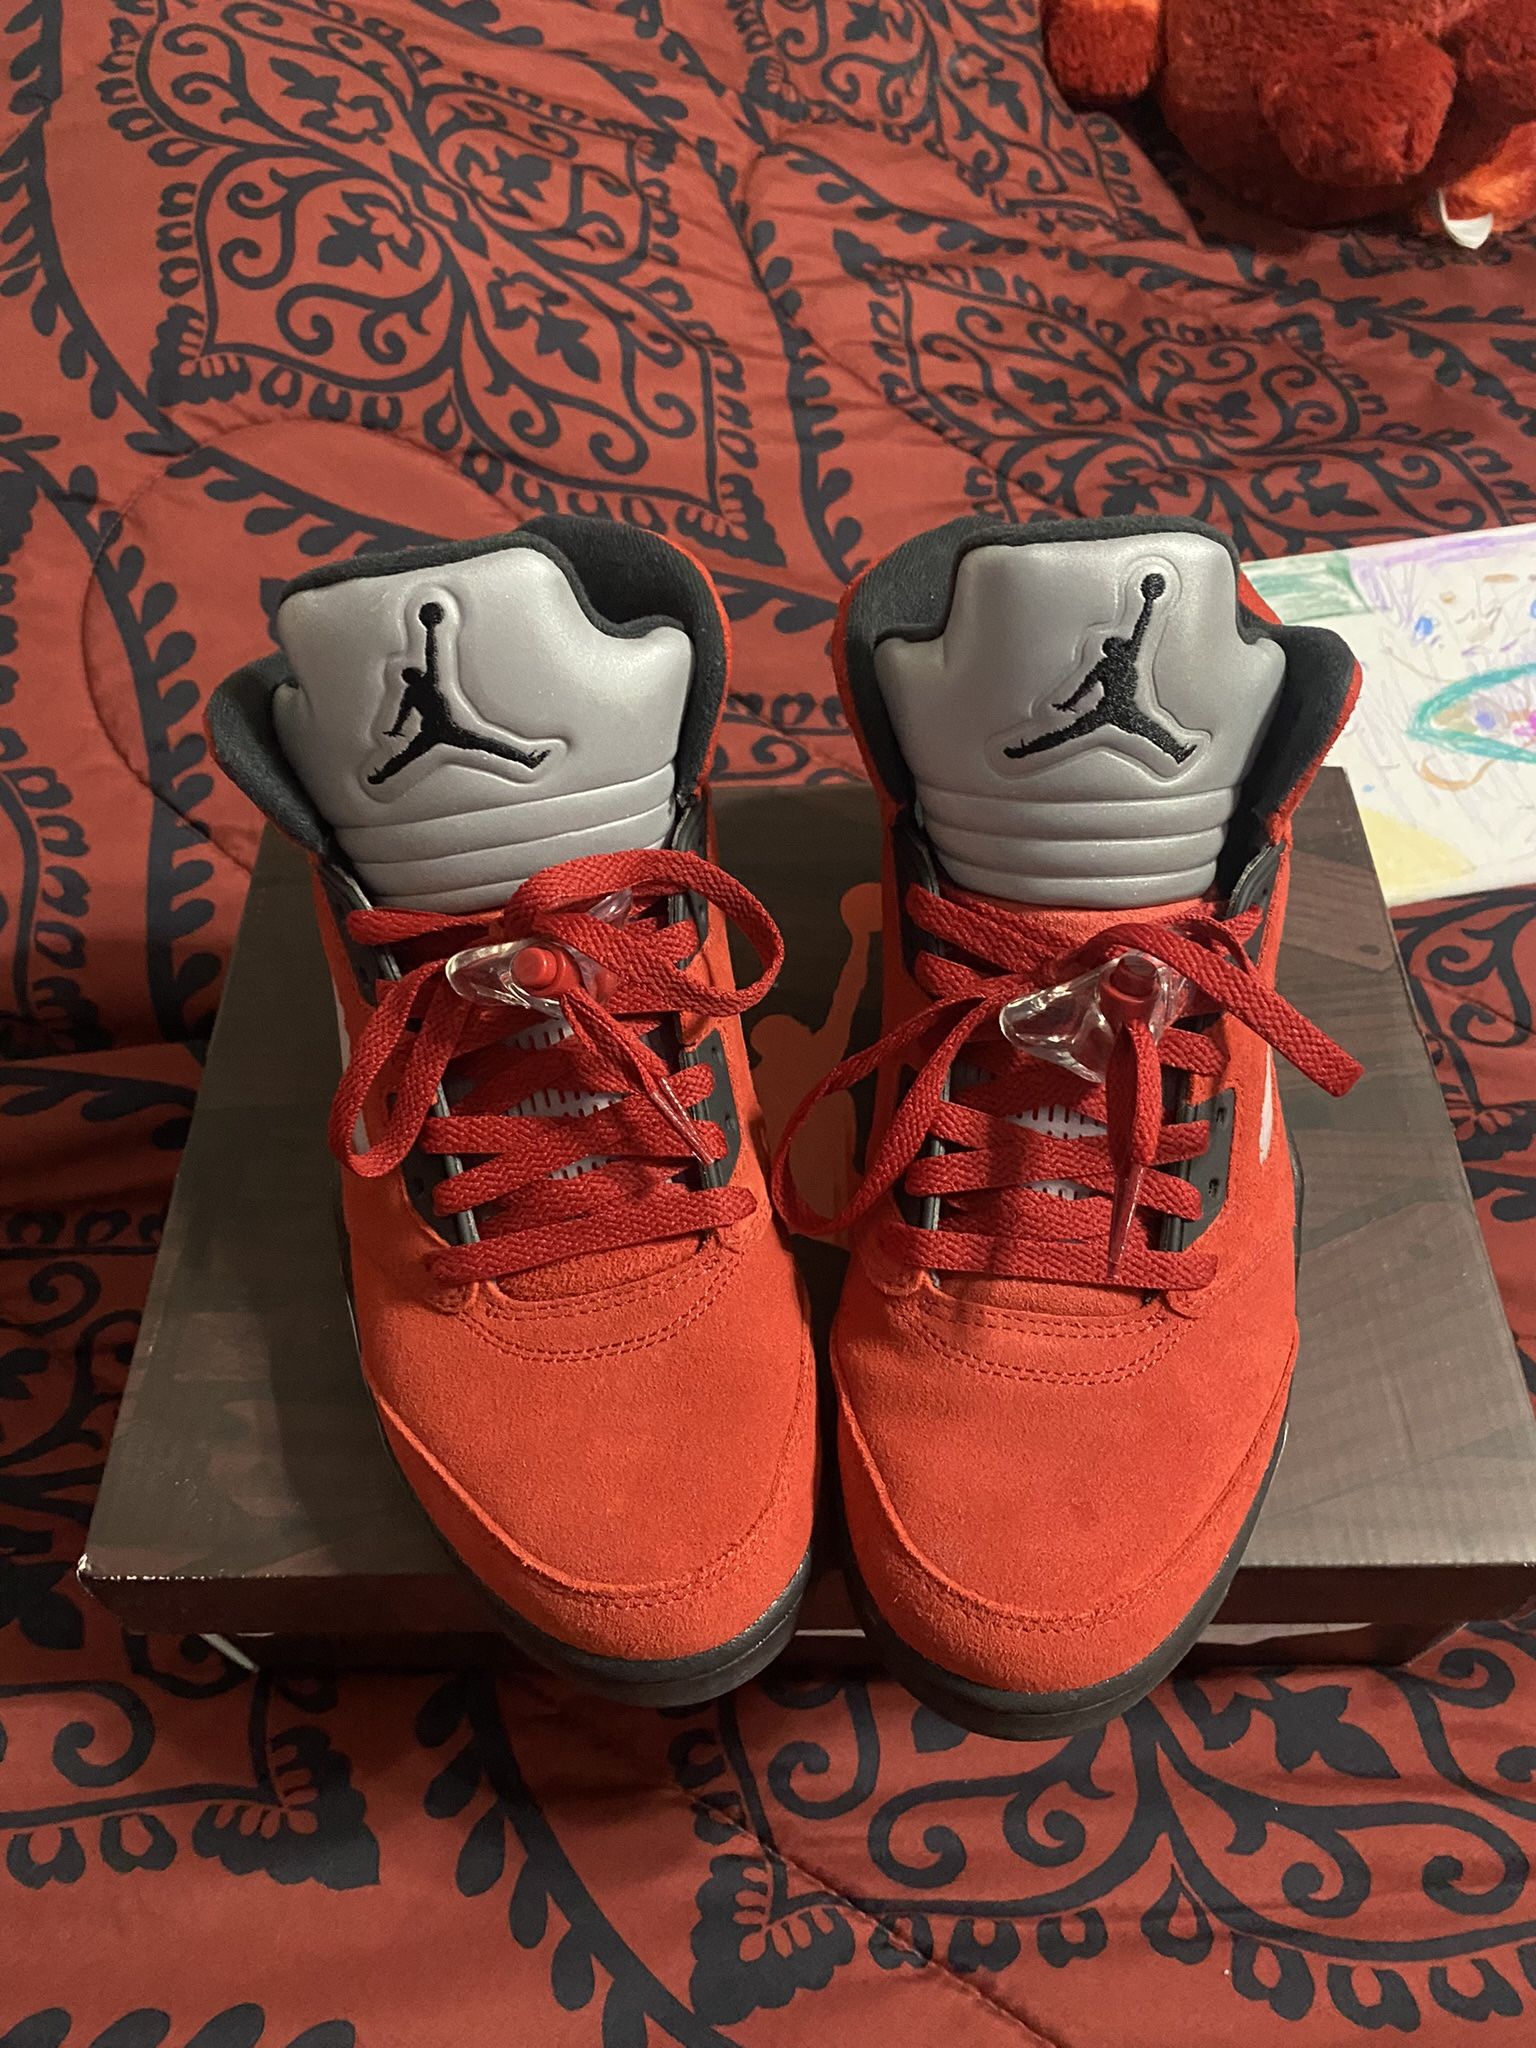 Jordan 5s Size 9.5